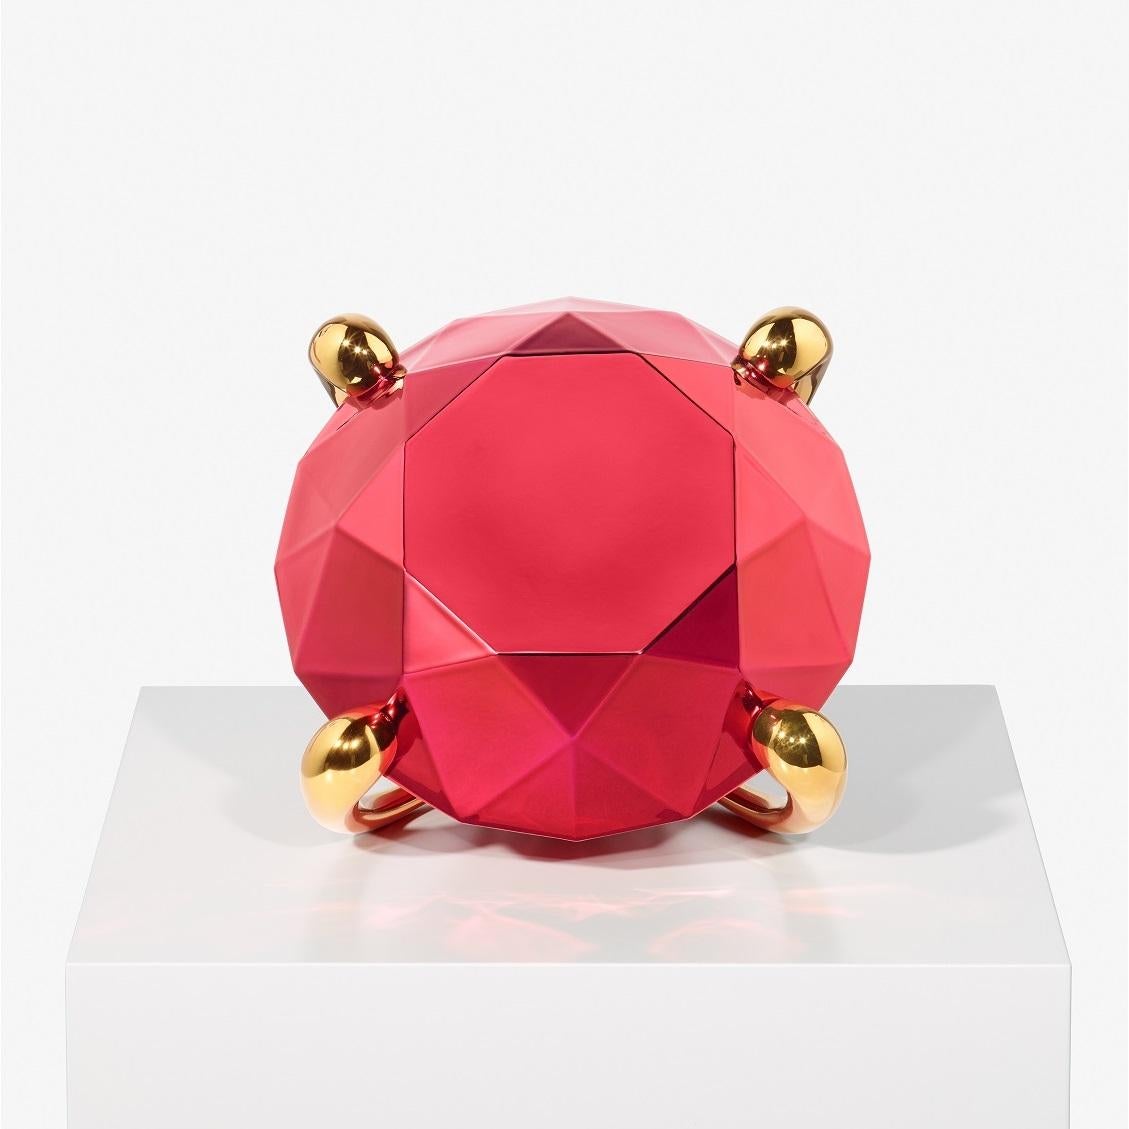 Escultura Diamante Rojo de Jeff Koons, Porcelana, Objetos de lujo, Arte contemporáneo